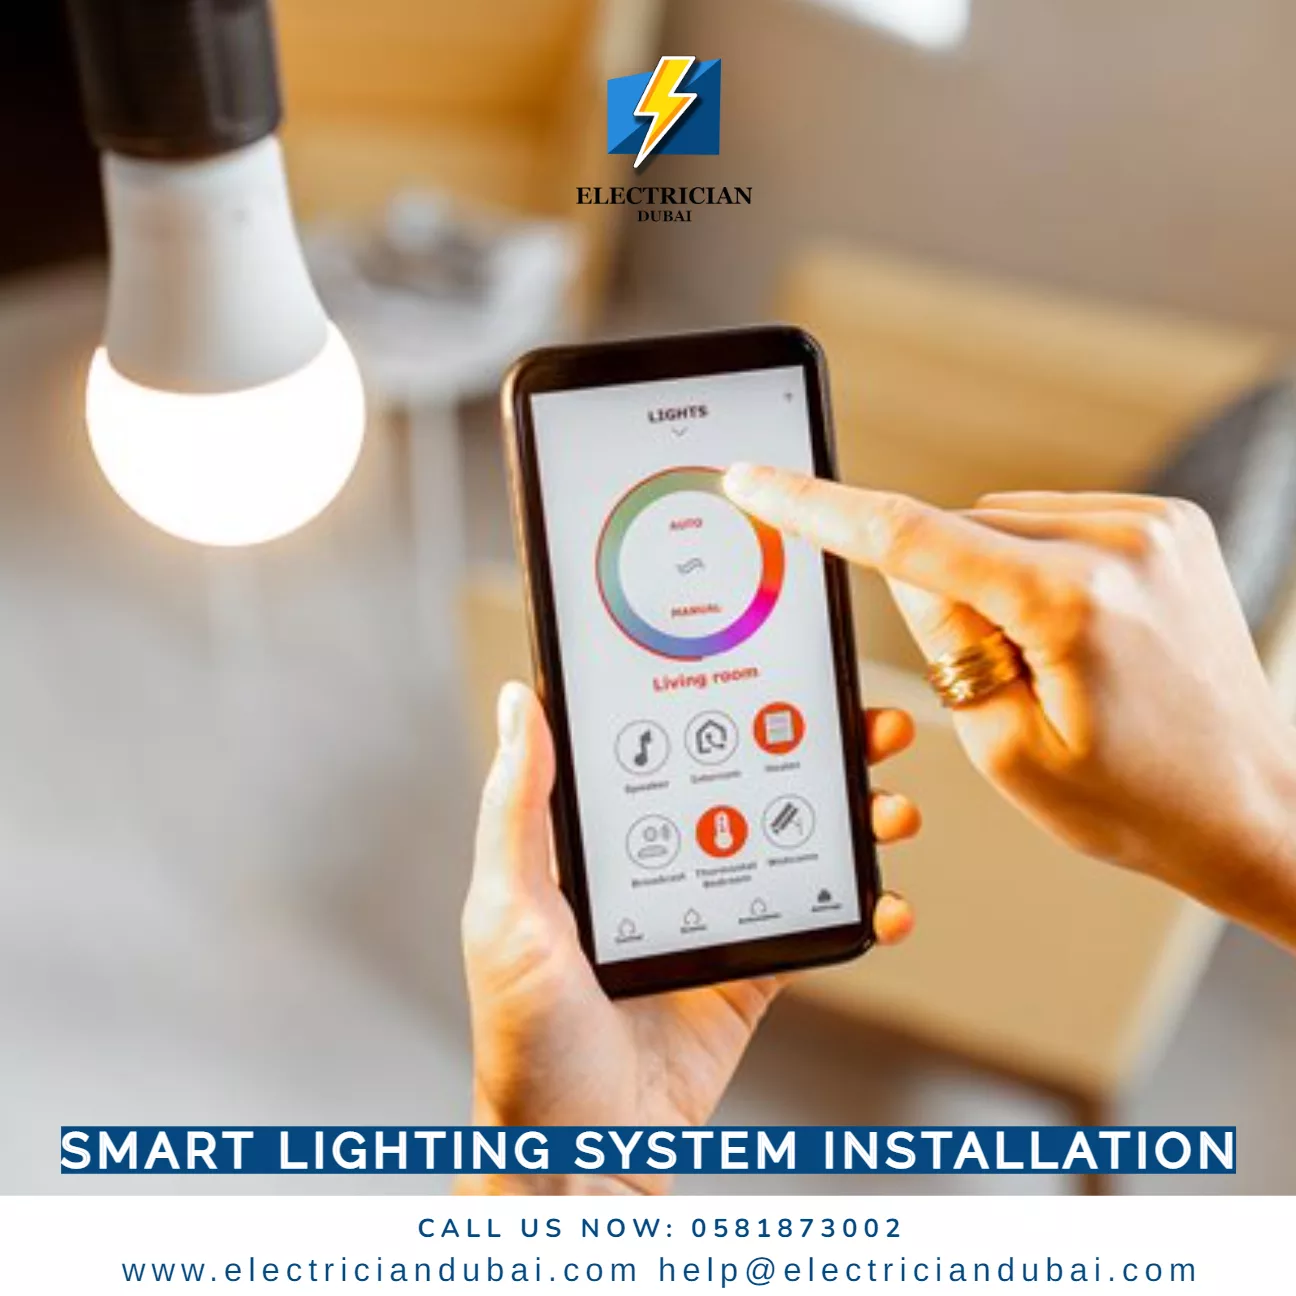 Smart Lighting System Installation